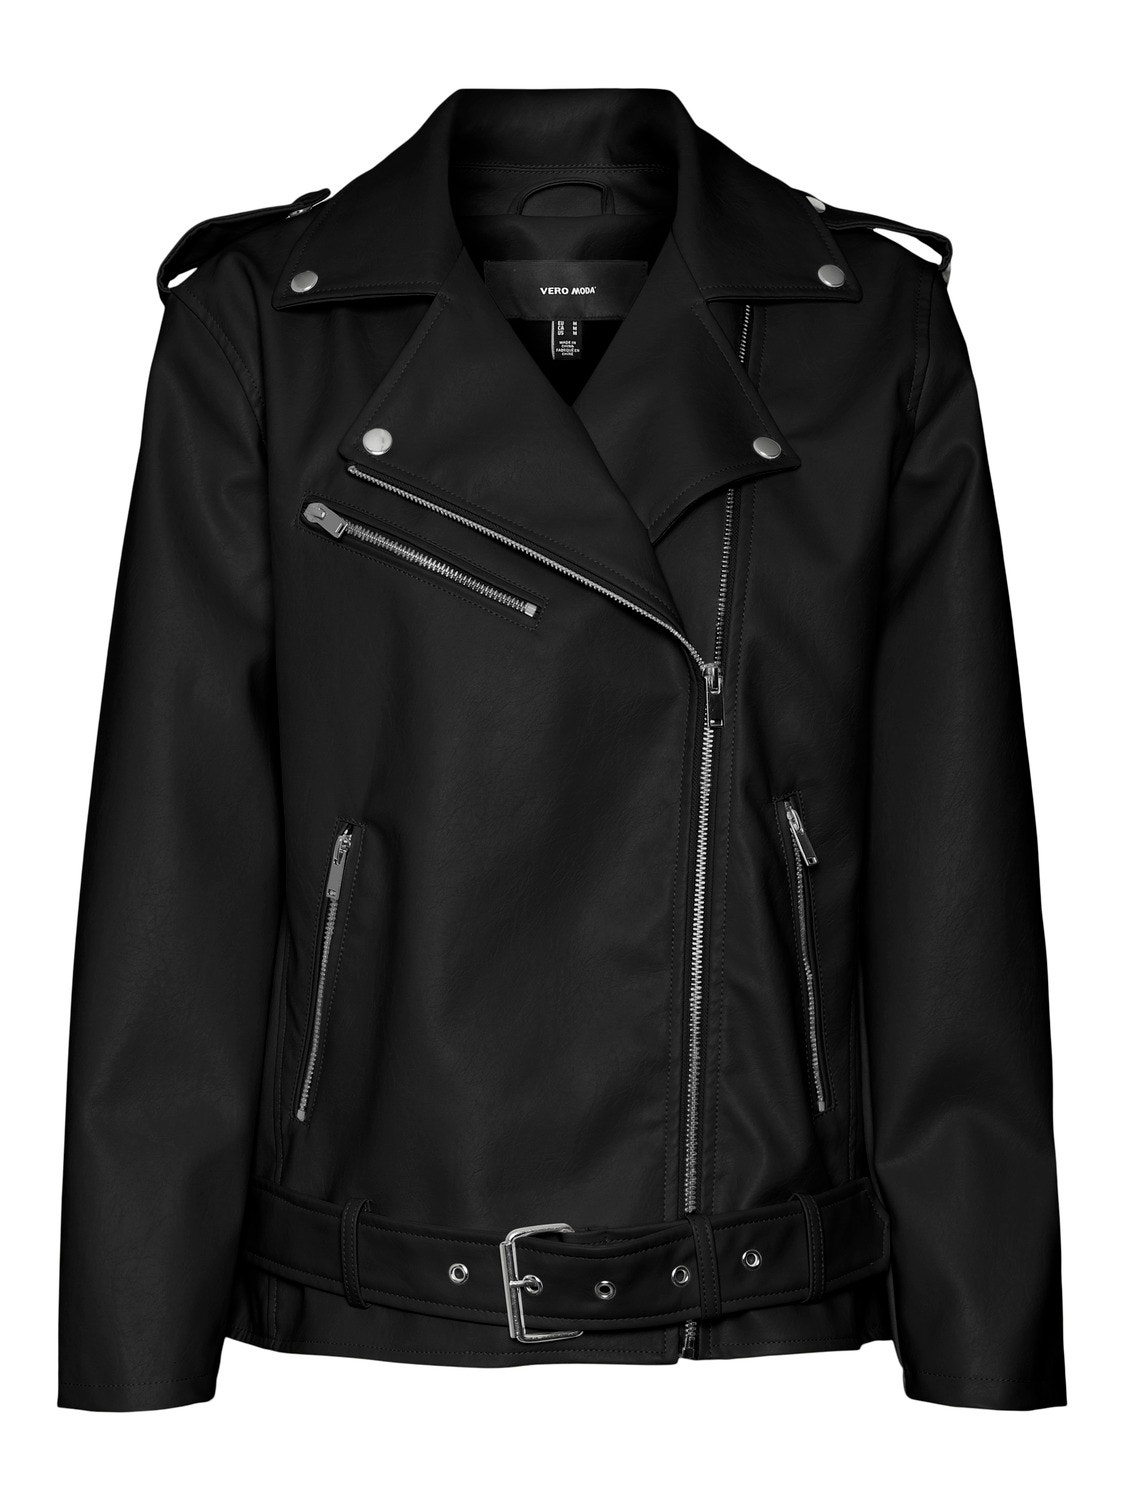 Vero Moda VMRAMON Jacket -Black - 10301076